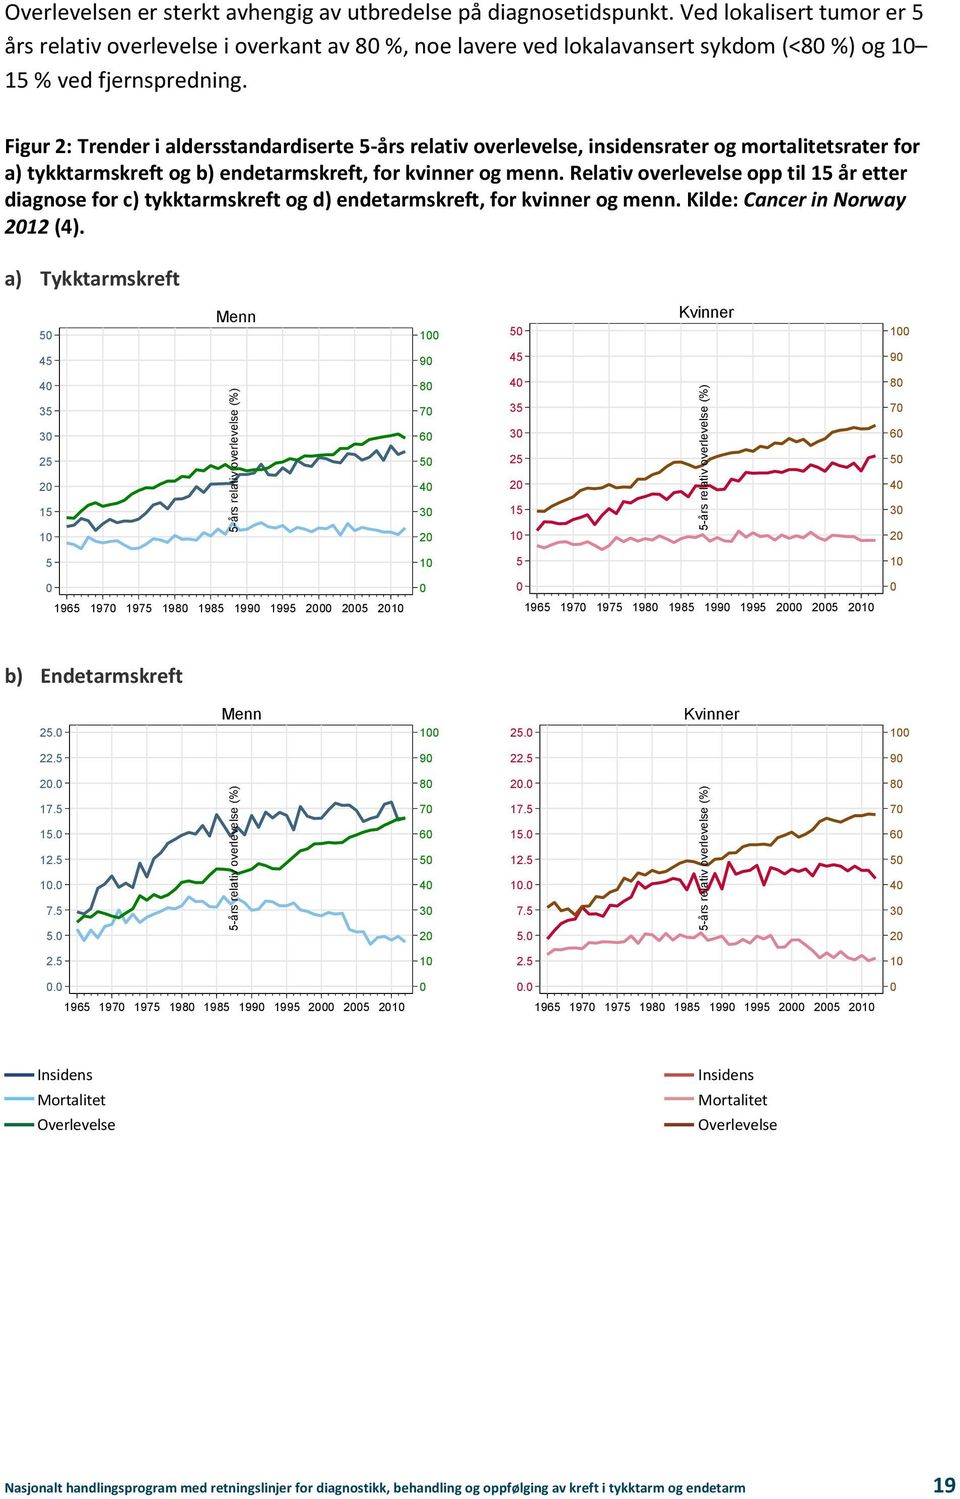 Figur 2: Trender i aldersstandardiserte 5-års relativ overlevelse, insidensrater og mortalitetsrater for a) tykktarmskreft og b) endetarmskreft, for kvinner og menn.